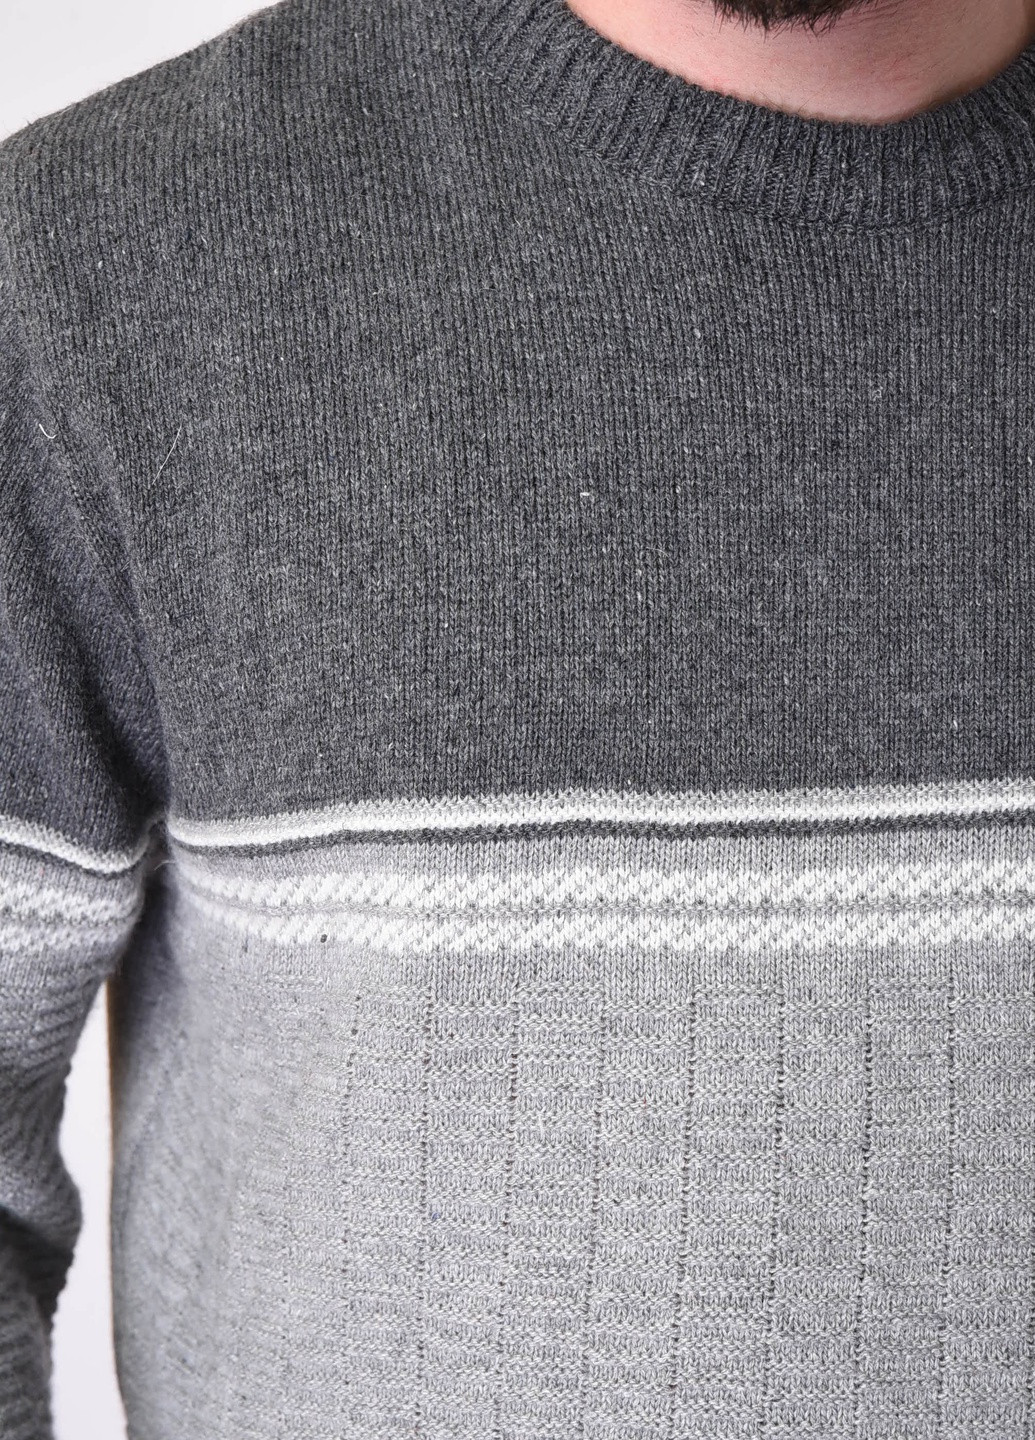 Серый зимний свитер мужской зимний серого цвета Let's Shop